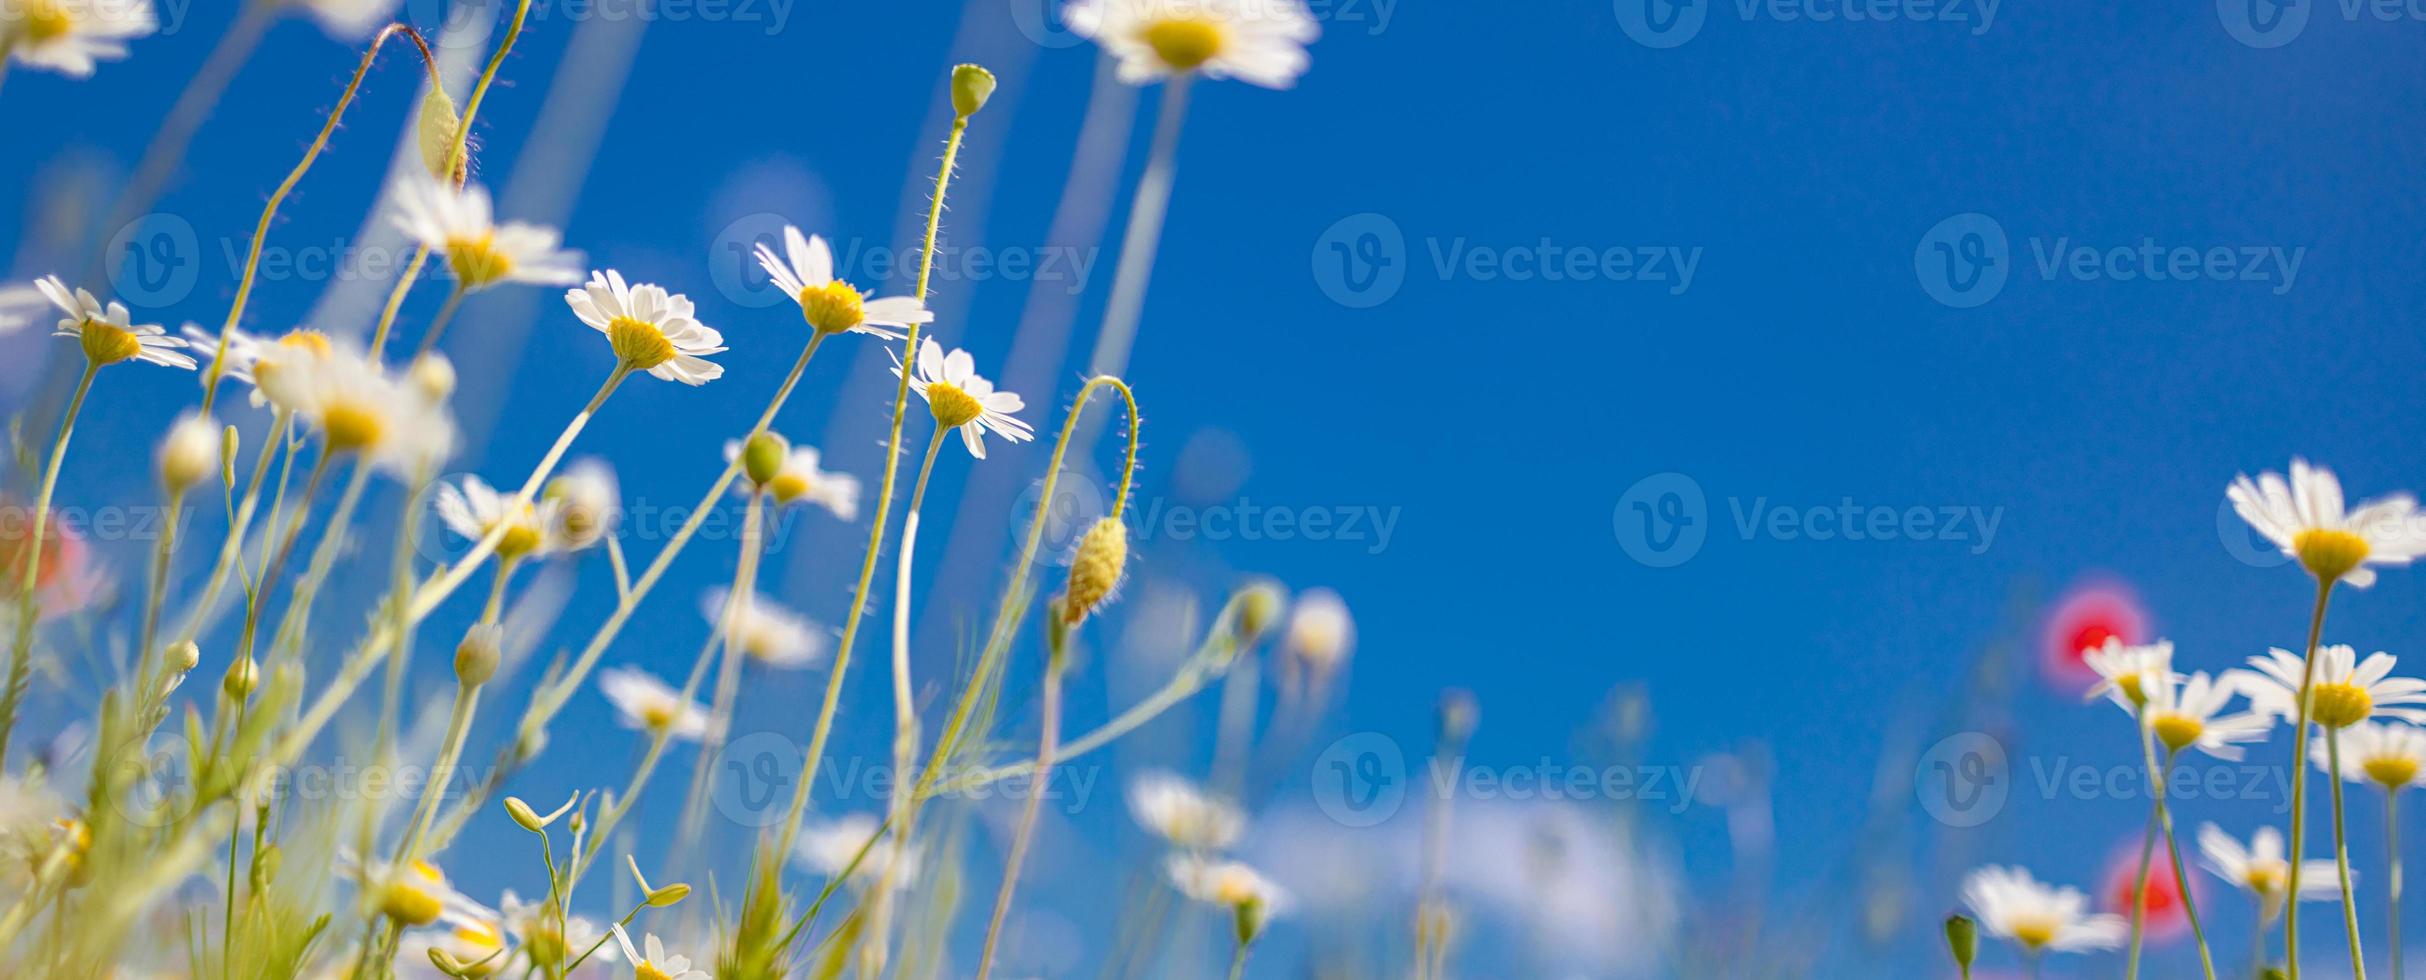 primavera estate primo piano margherite bianche su sfondo blu cielo. colori tenui idilliaci, paesaggio di campo di fiori di prato foto